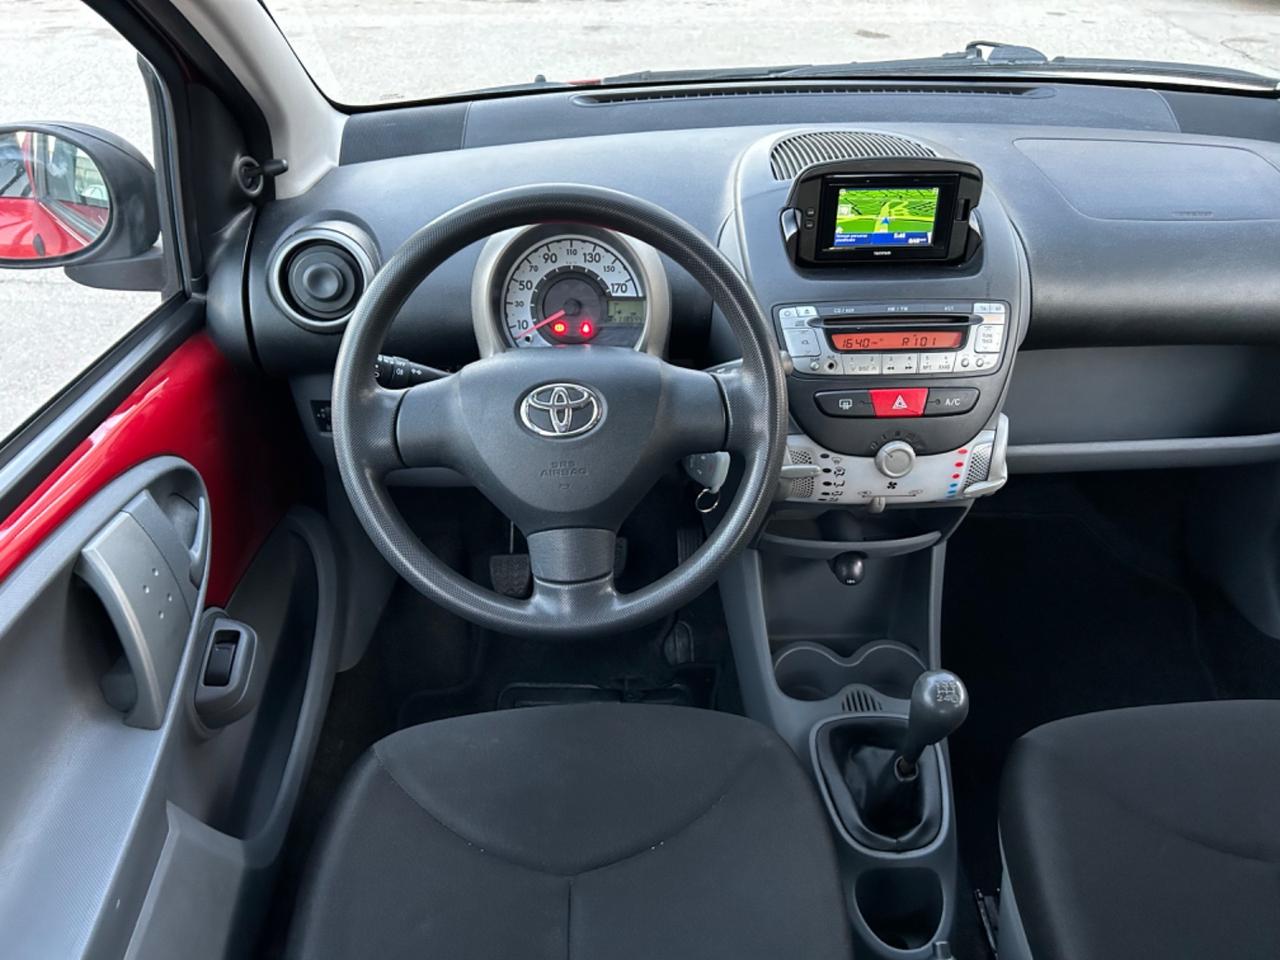 Toyota Aygo 1.0 benzina 68 cavalli 2011 navigatore